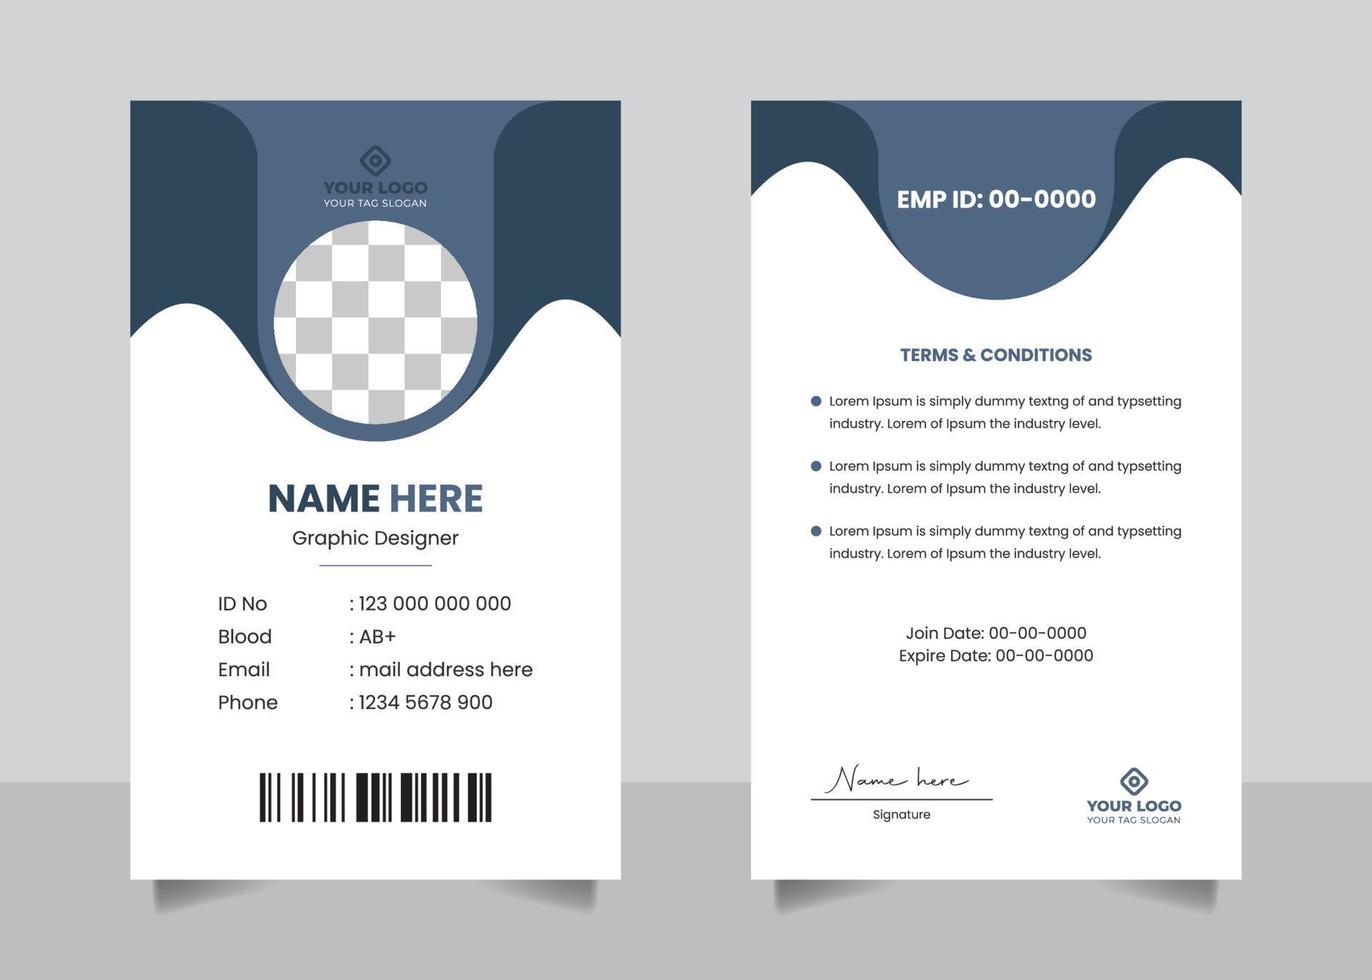 vector de plantilla de diseño de tarjeta de identificación oficial del personal del empleado